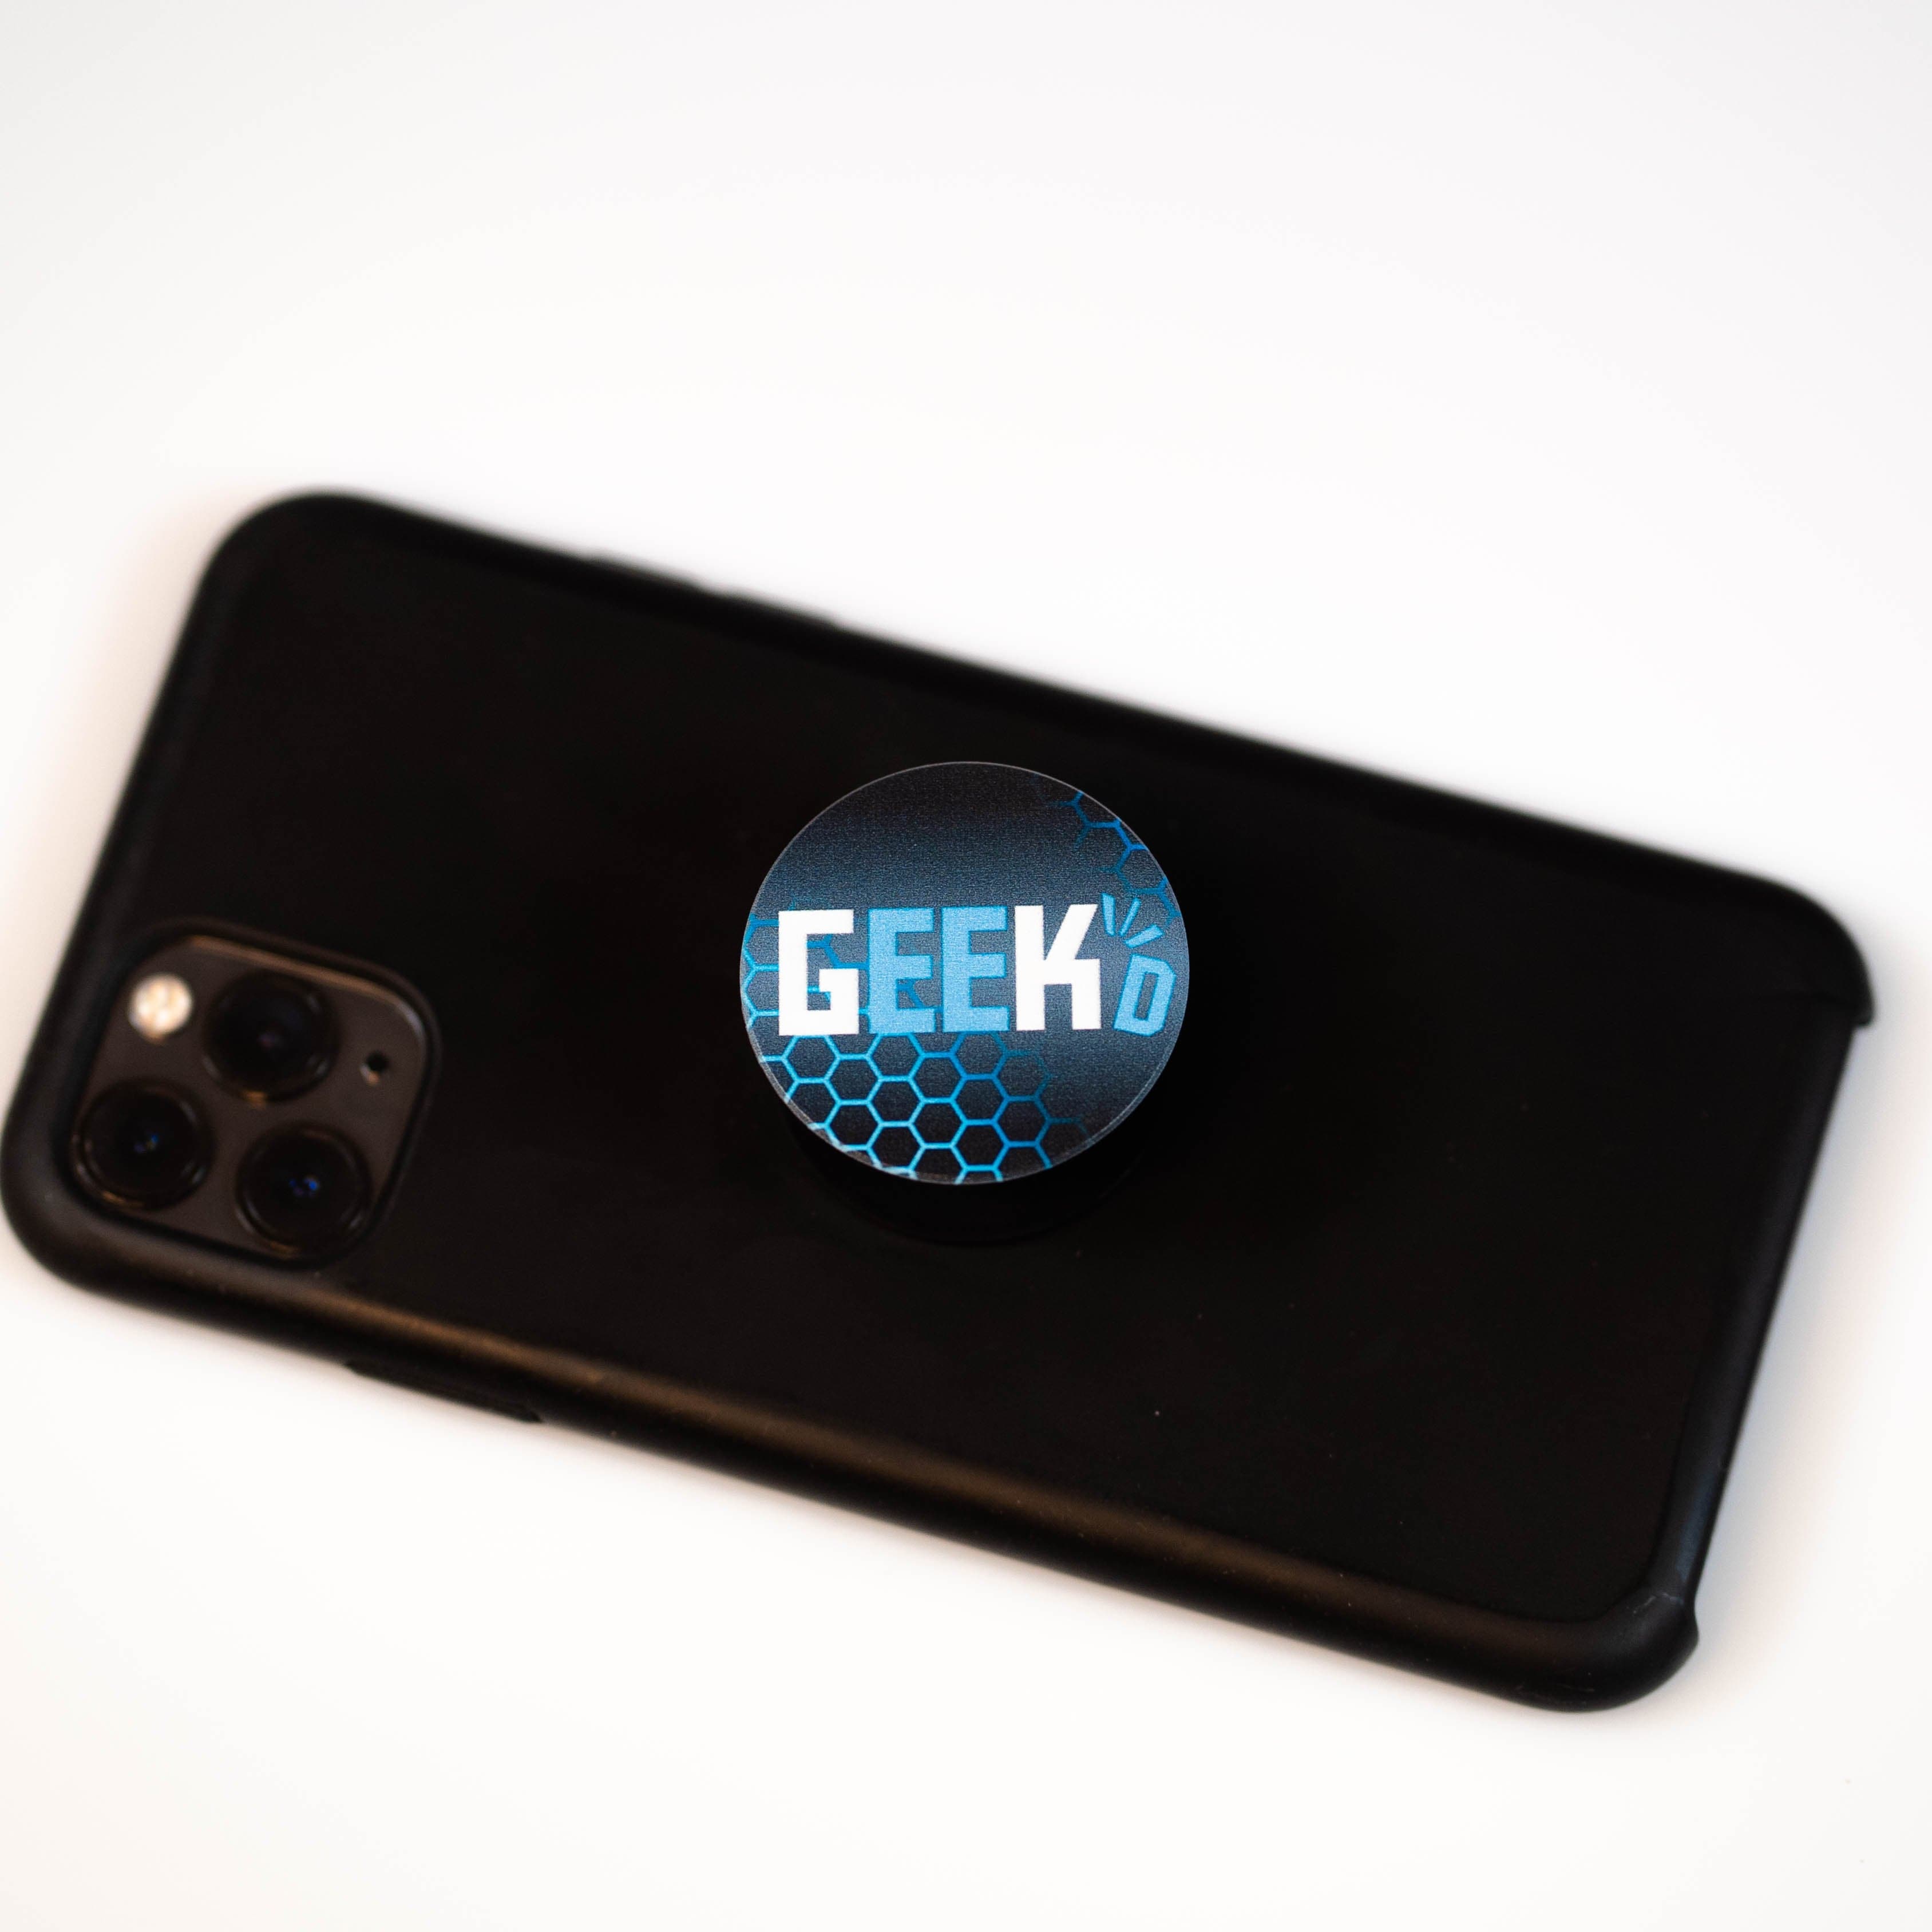 Geekd PhoneSocket Geekd